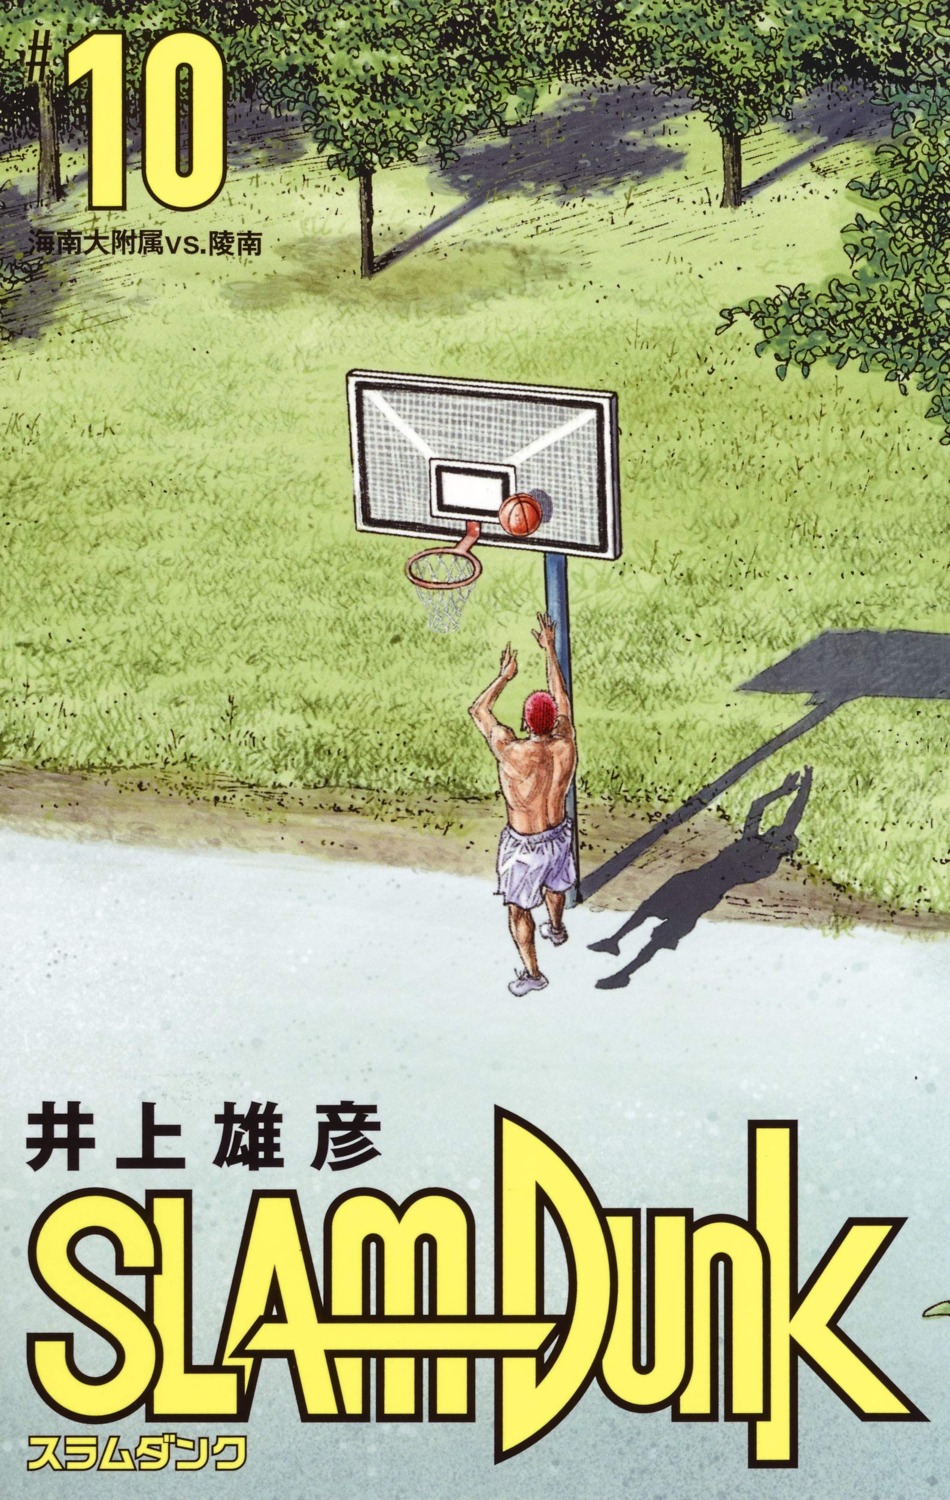 inoue_takehiko male slam_dunk